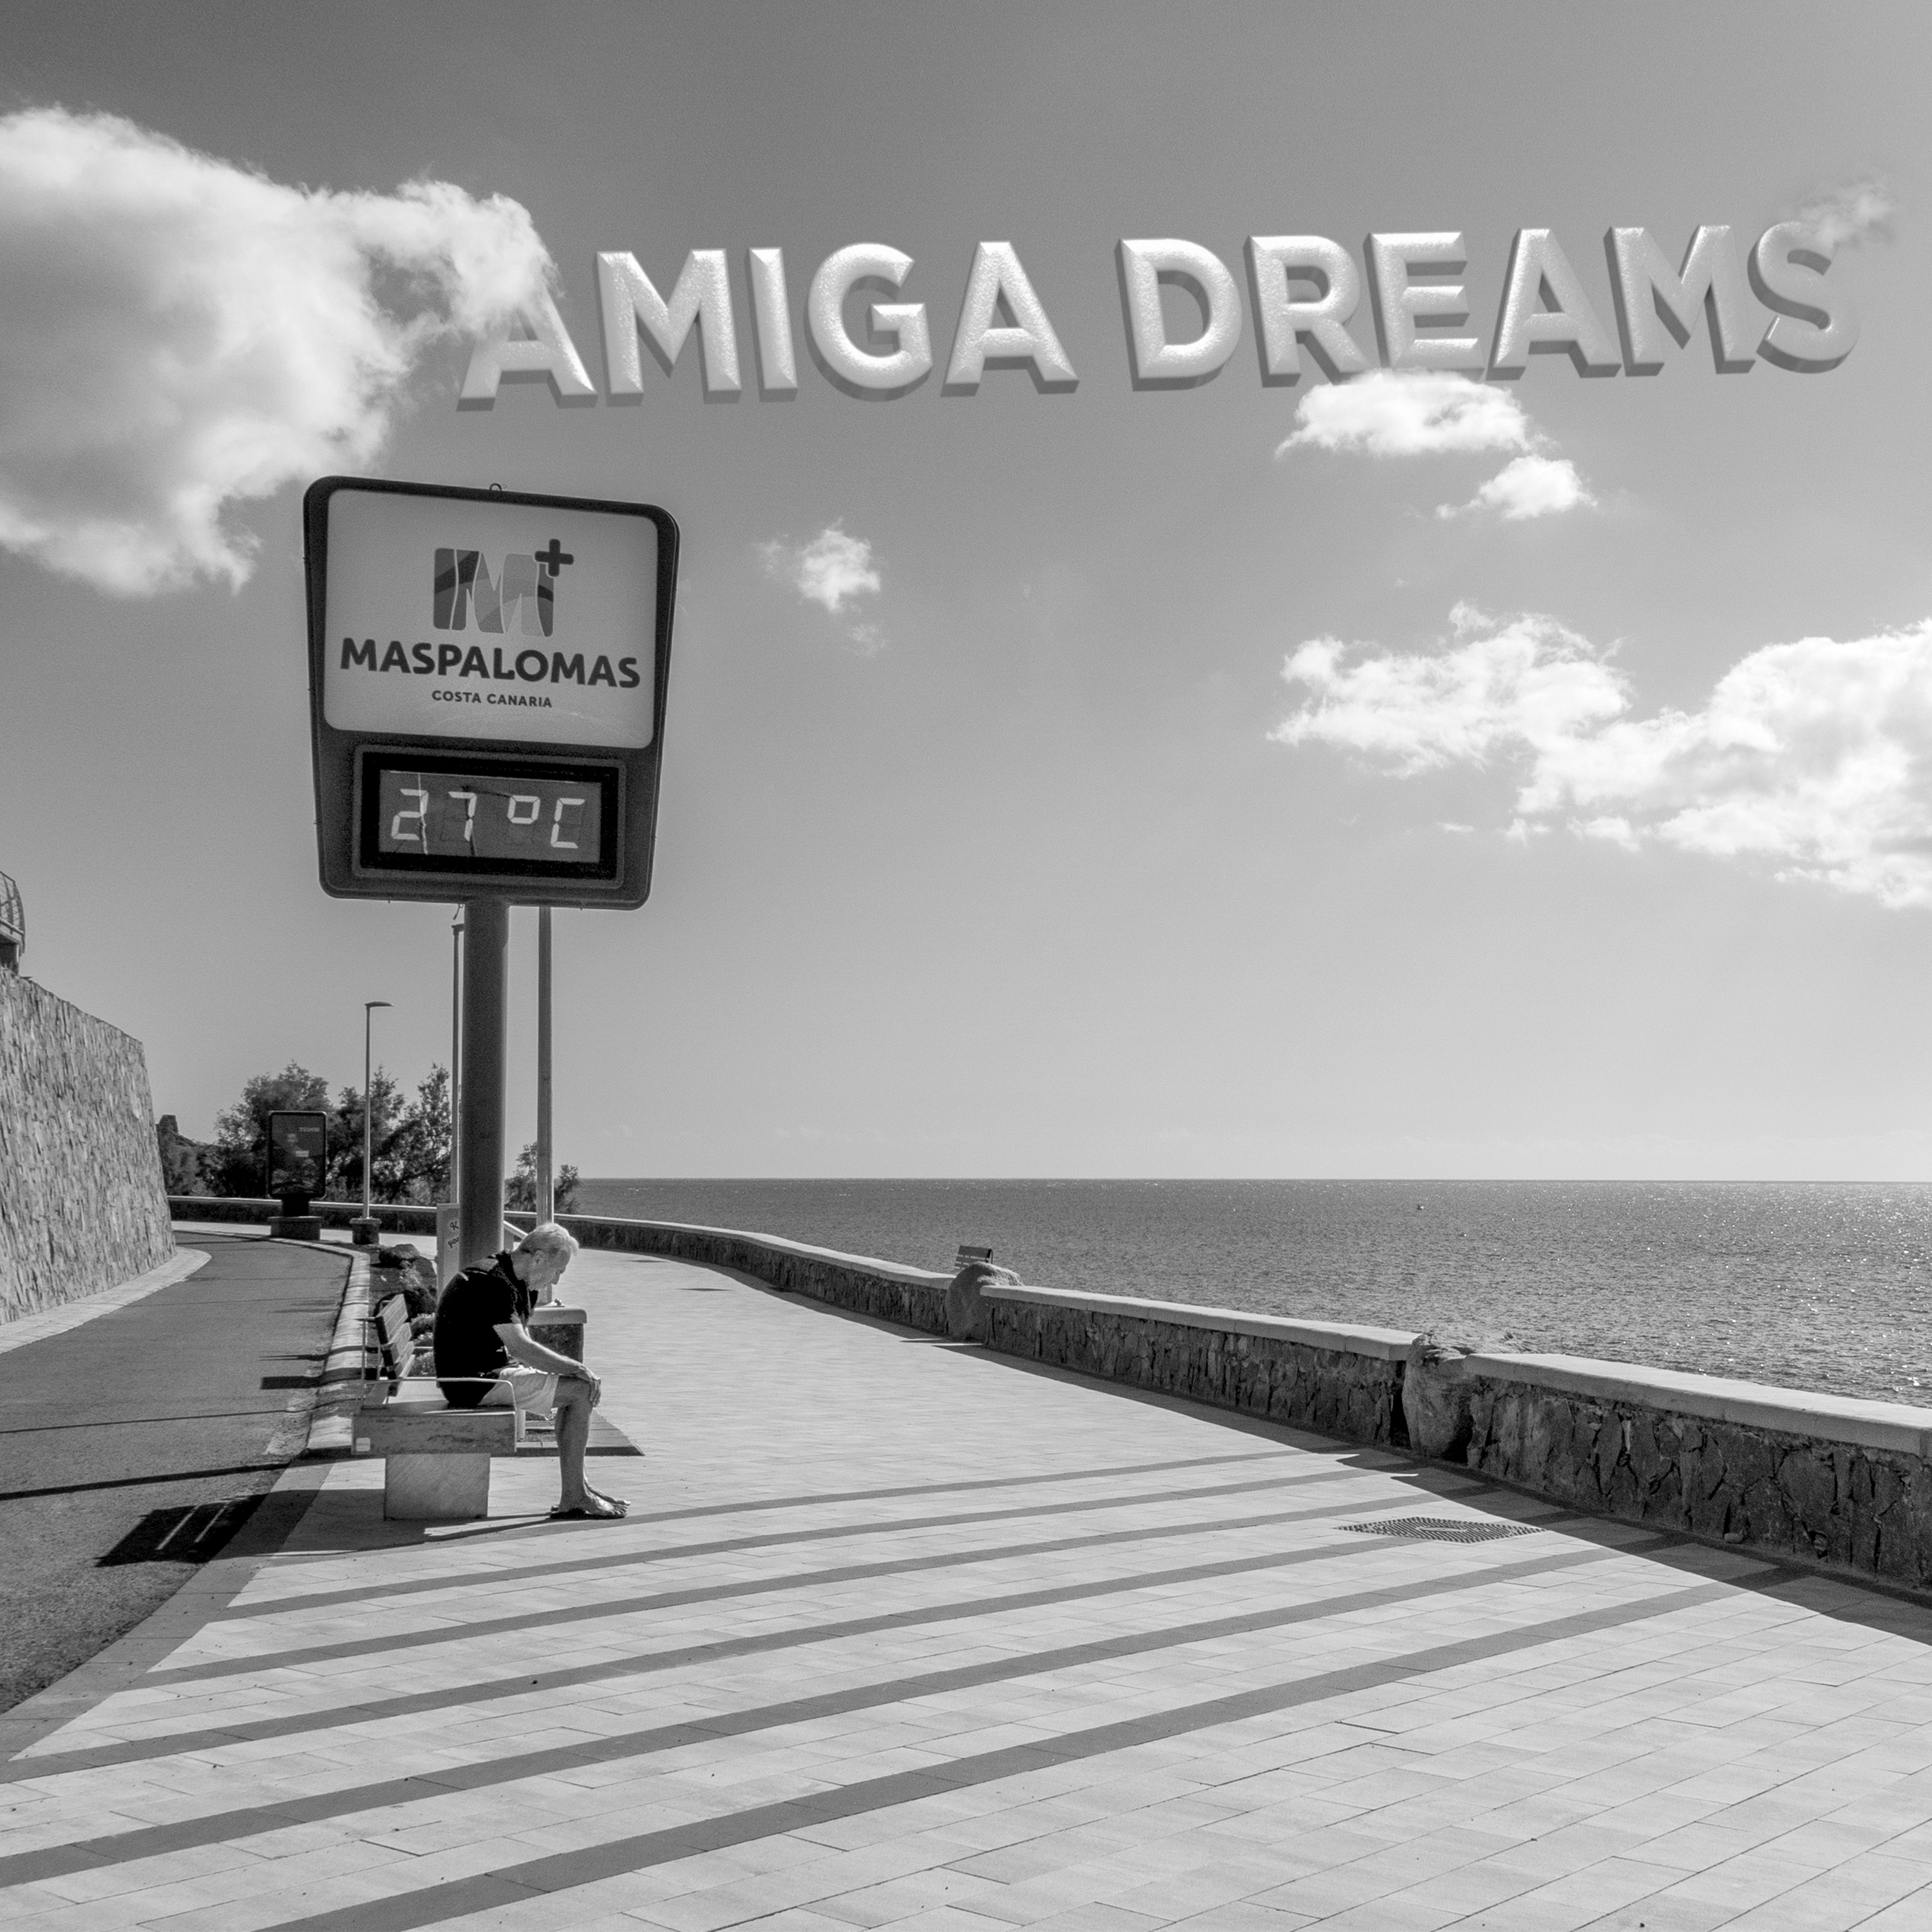 Amiga Dreams